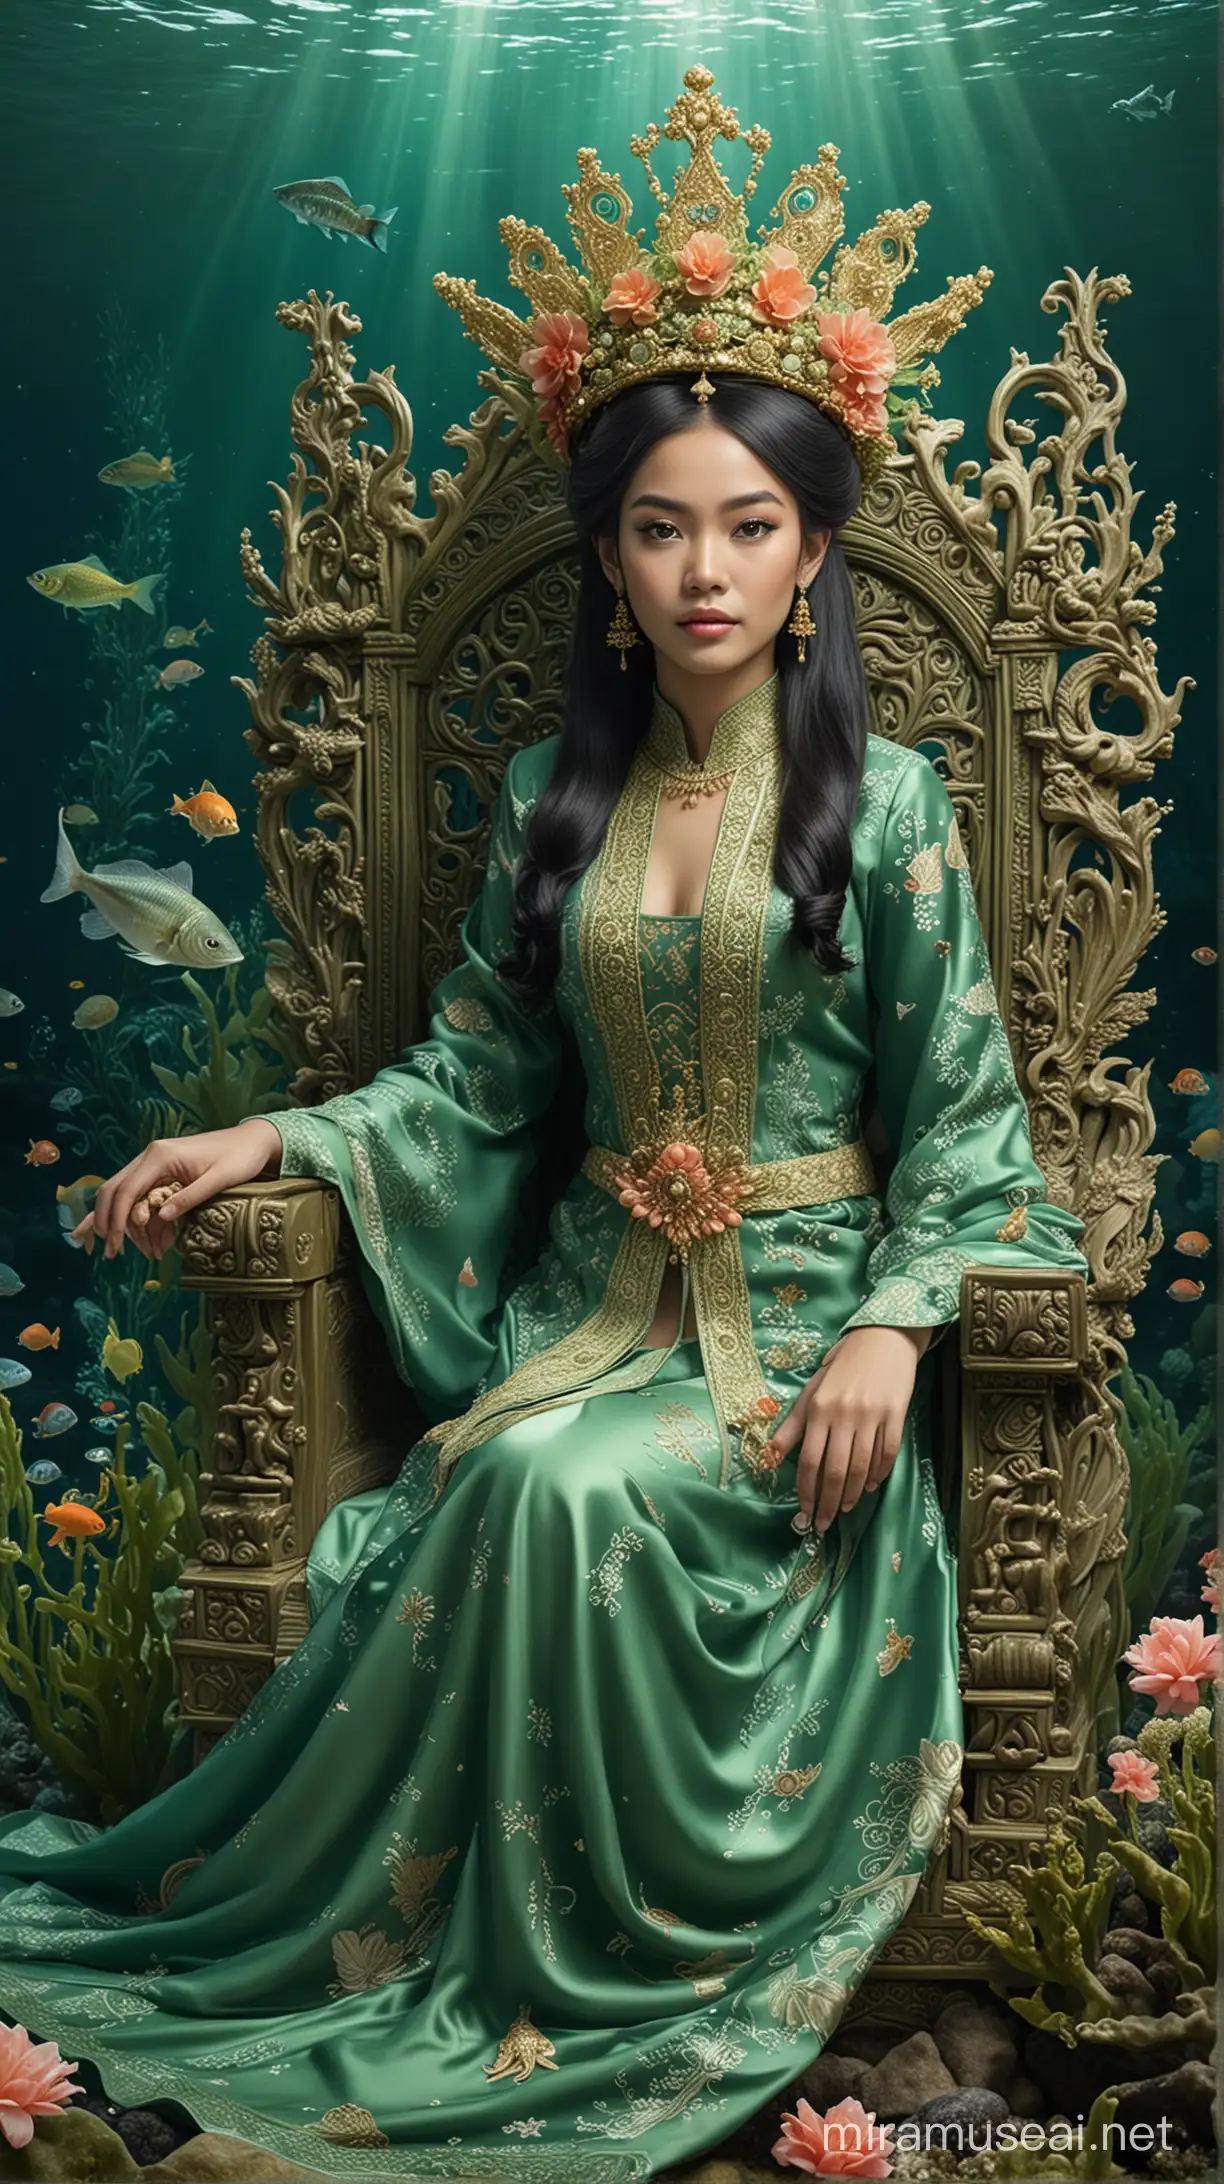 Tolong buatkan gambar Nyi Roro Kidul asal indonesia dengan pakaian adat jawa kerajaan laut yang anggun berwarna hijau dan mahkota yang megah di atas kepala, sedang duduk di singgasana di dasar laut yang indah, dikelilingi oleh makhluk laut seperti ikan, ubur-ubur, dan terumbu karang yang berkilauan."